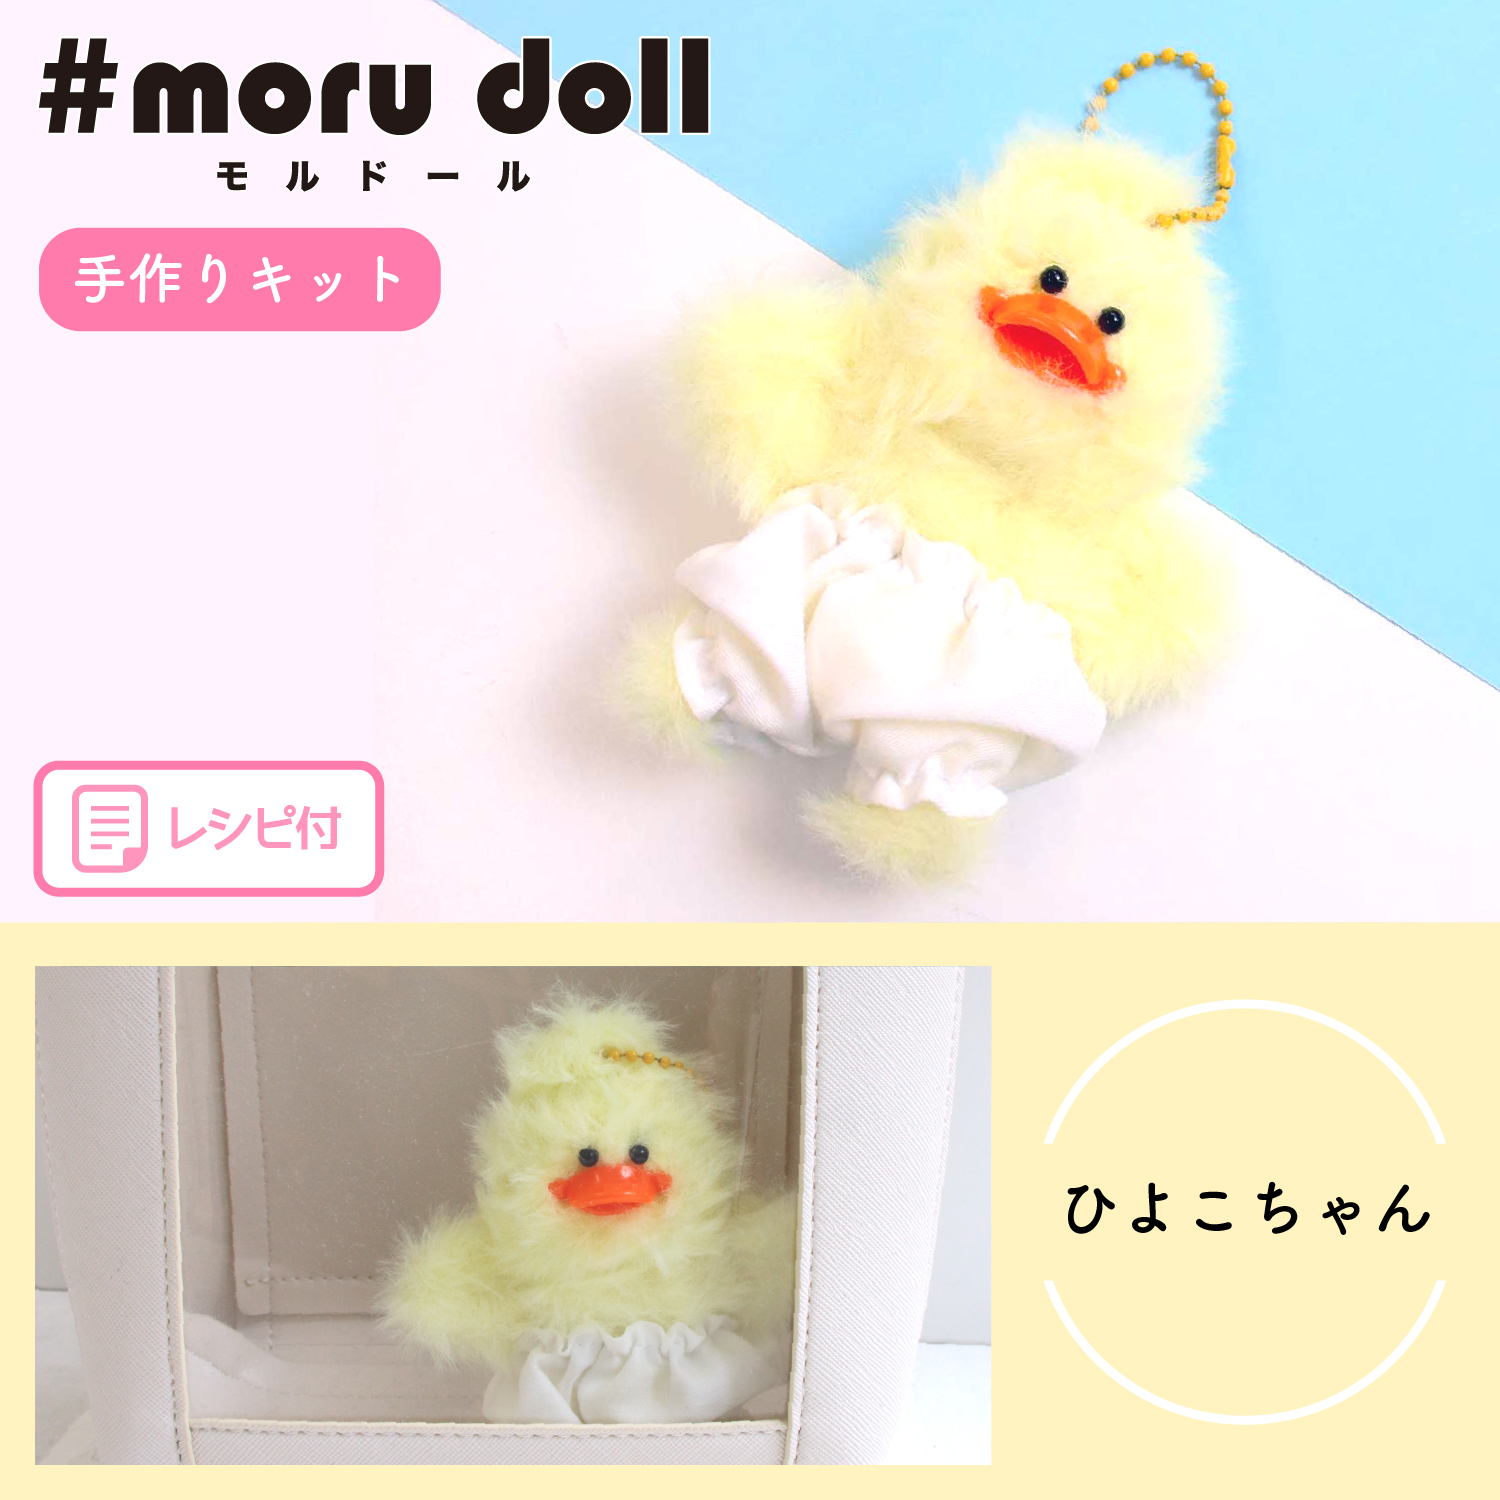 MOL-KIT-23 モール人形 モールドール キット ひよこちゃん (袋)